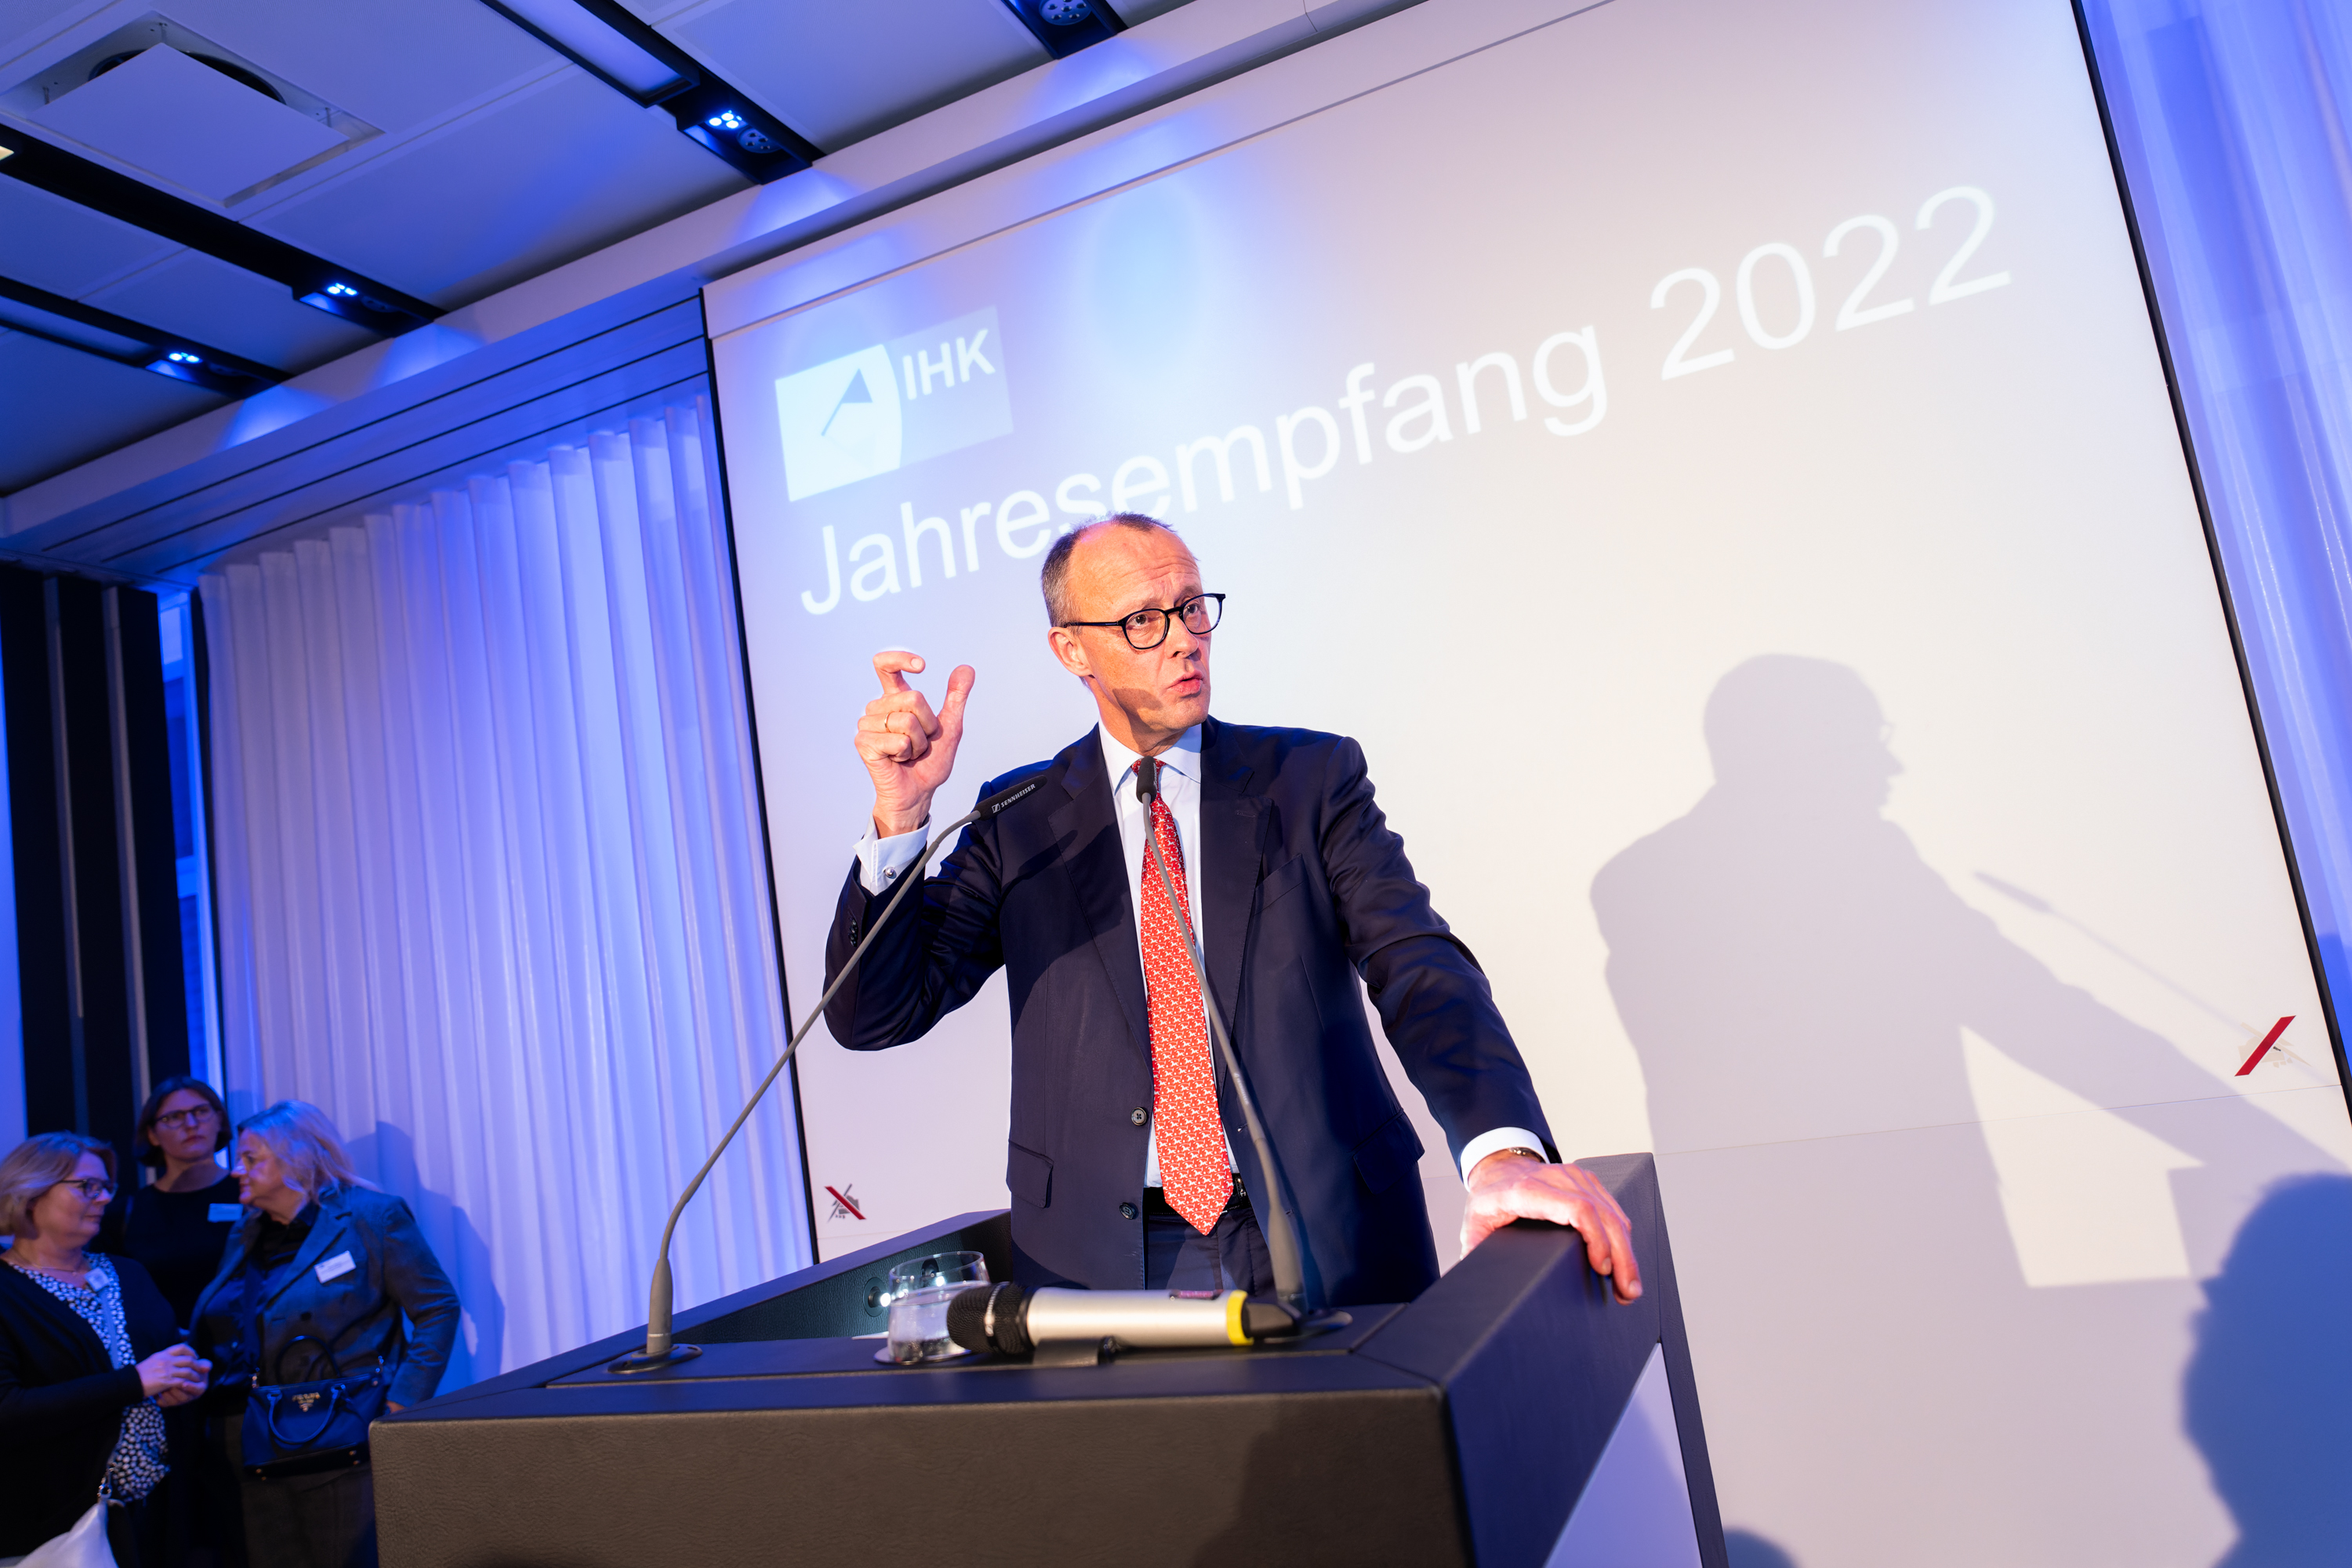 Friedrich Merz IHK Jahresempfang 2022